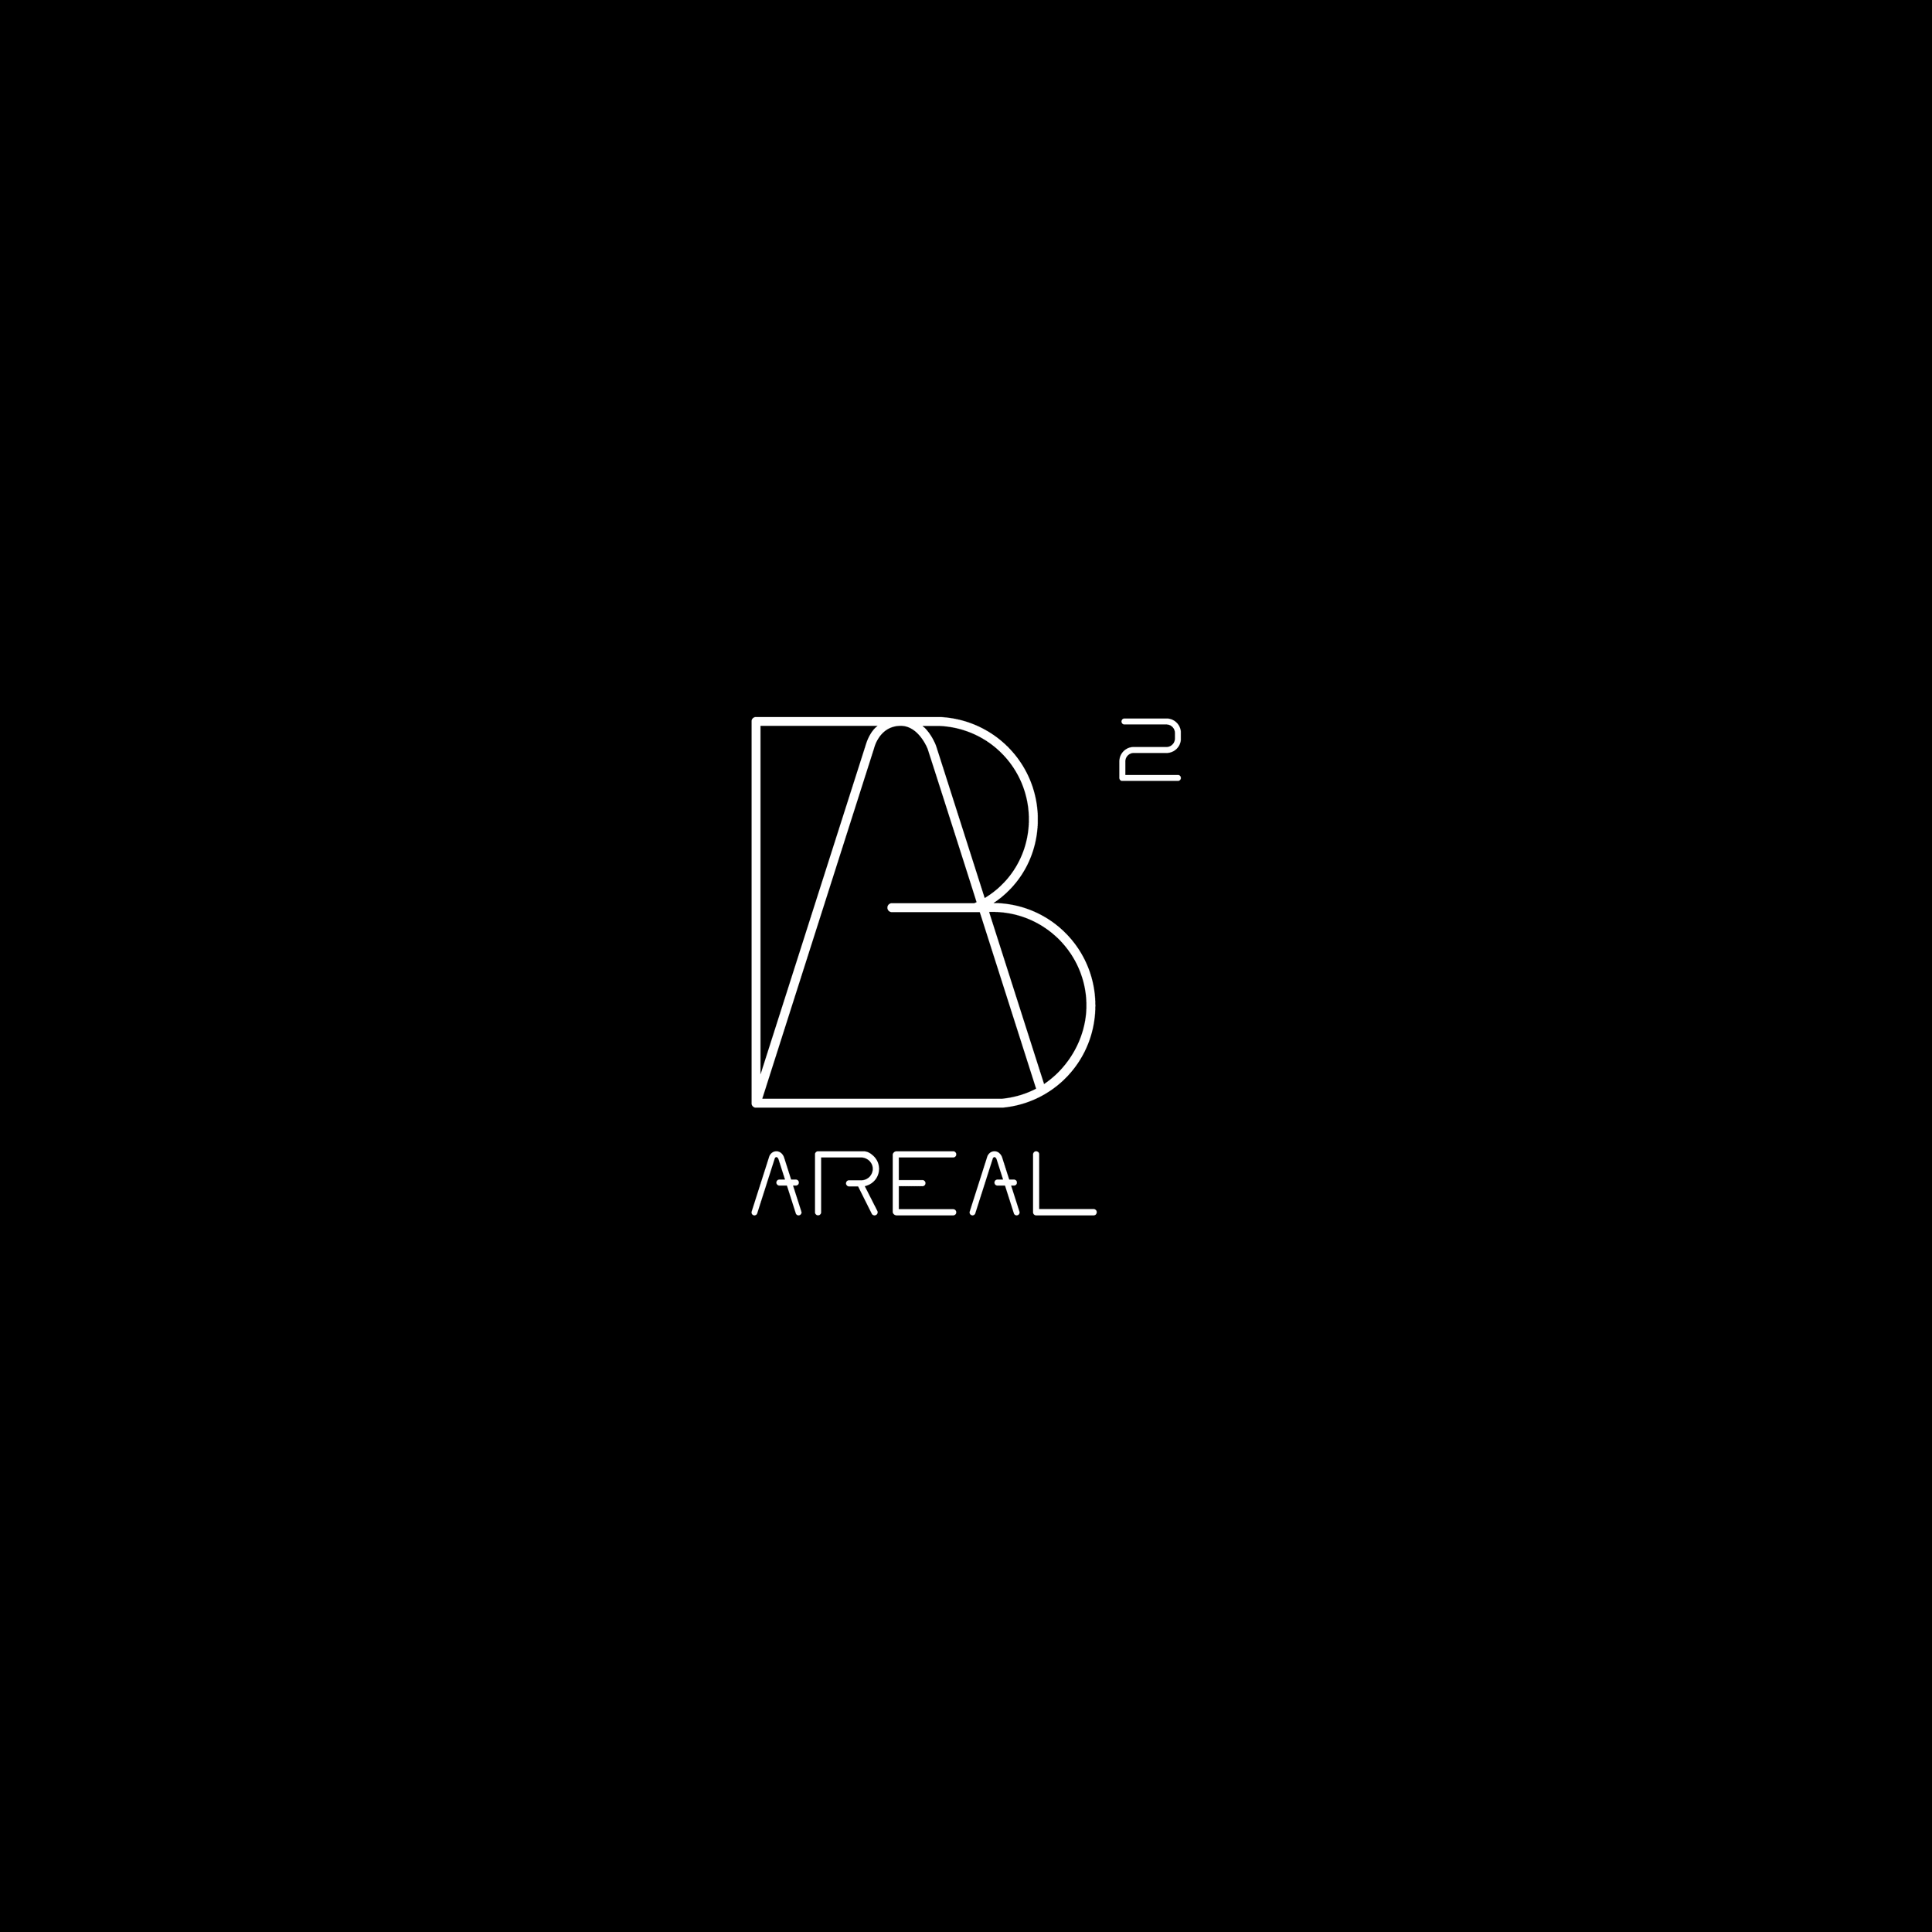 Das Brandicon des Berardi Areal 2, welches durch ein Logodesign für kleine Unternehmen entwickelt wurde.